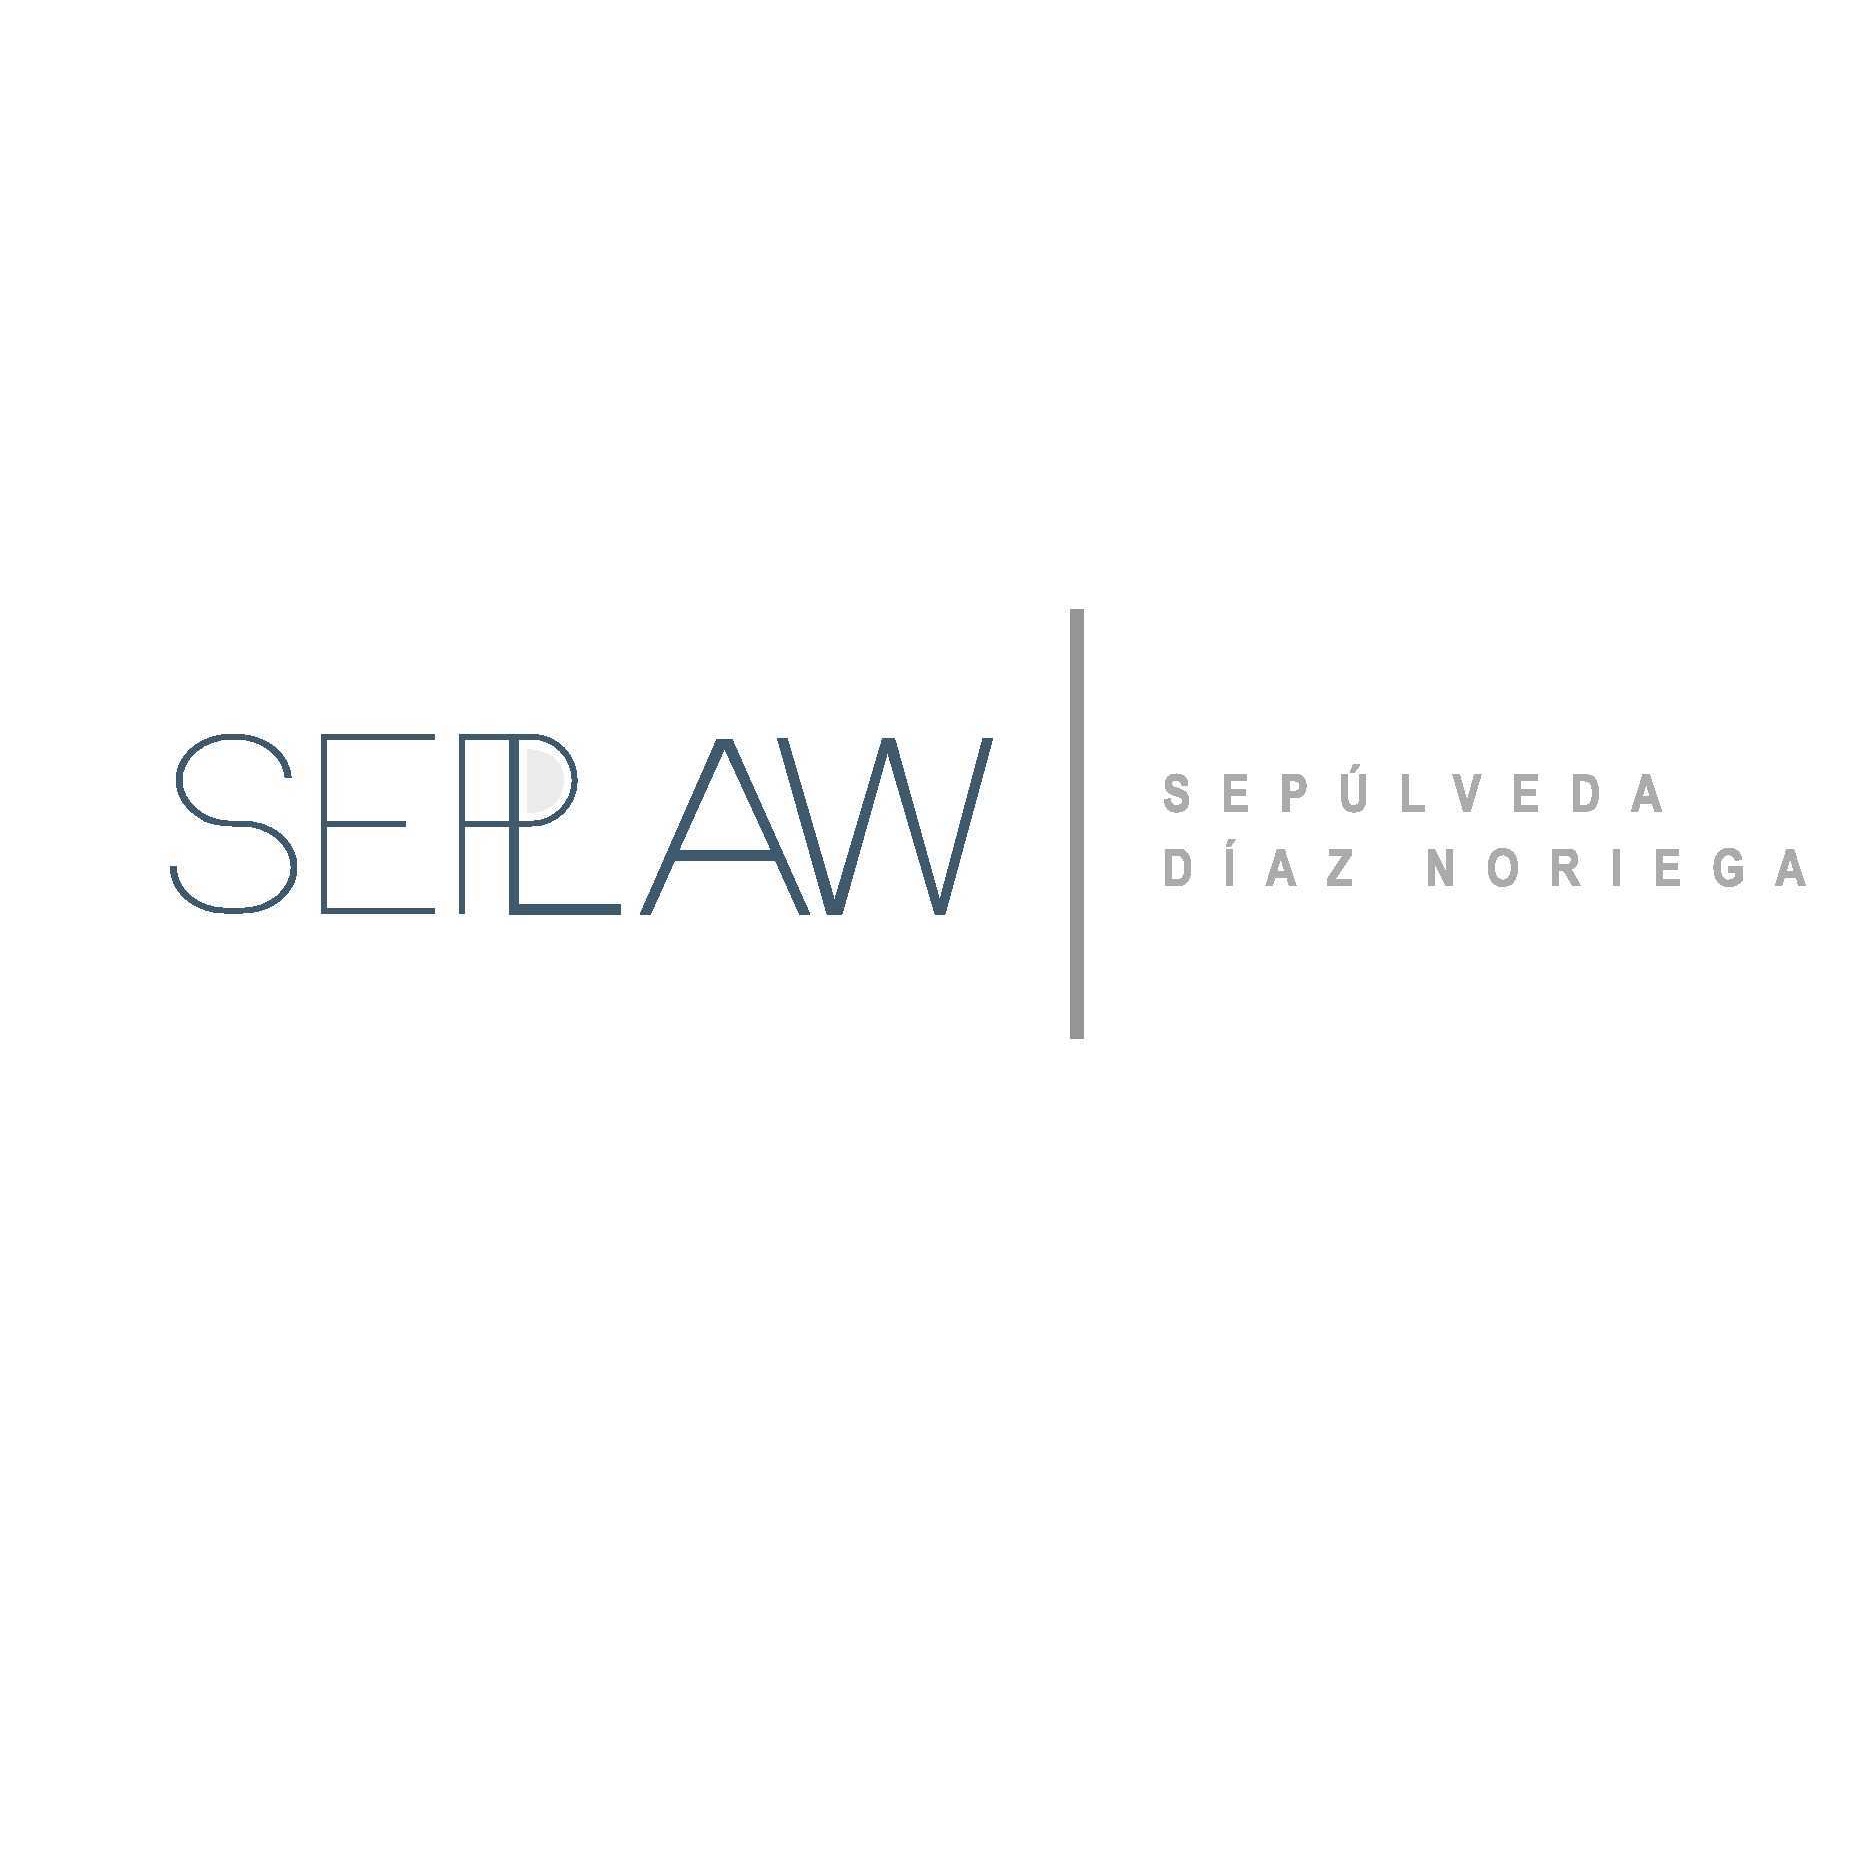 Seplaw - Sepulveda y Diaz Noriega